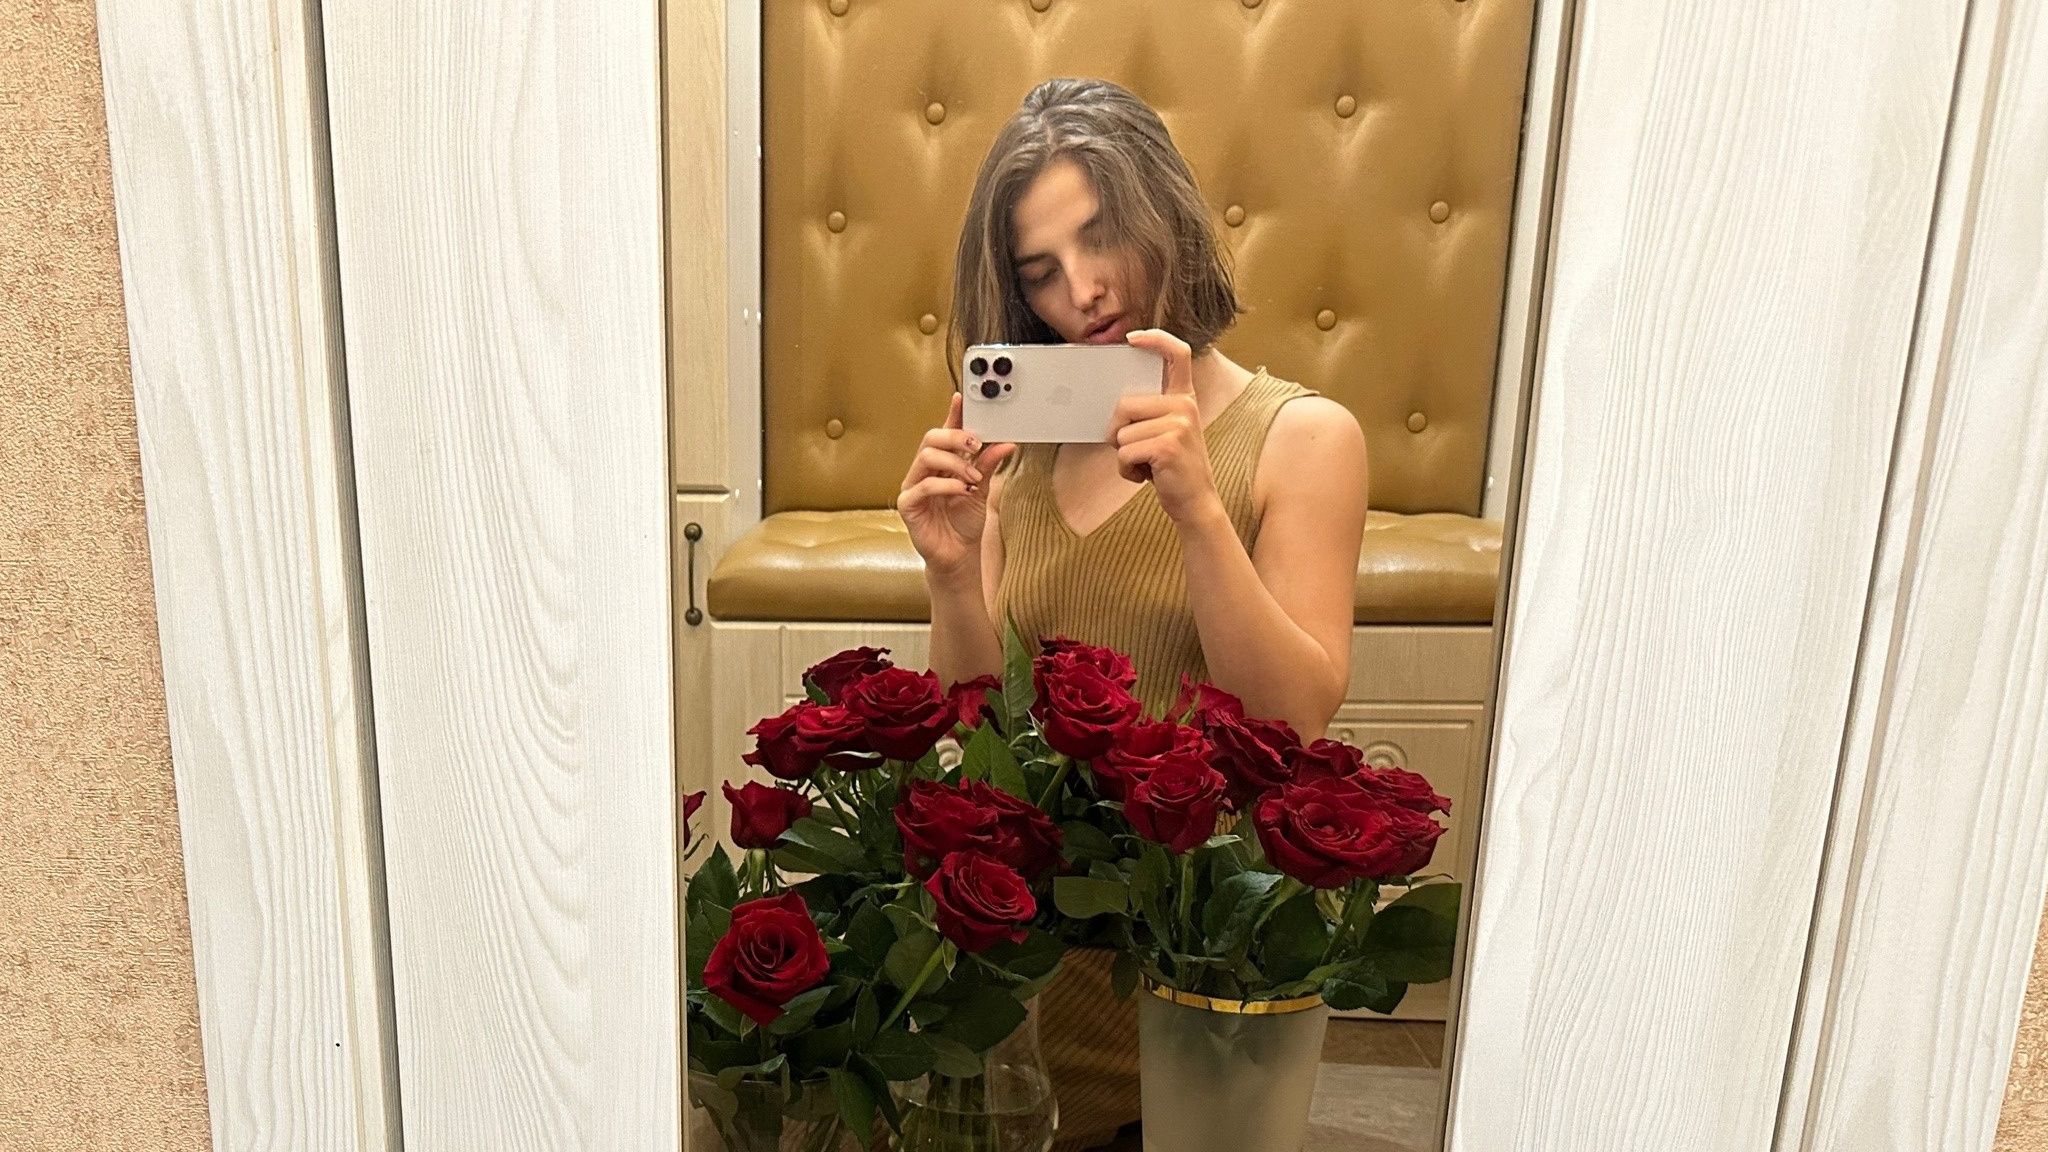 «Женщины грустно смотрят вслед, мужчины отводят глаза»: девушка из Волгограда учит требовать цветы на День Валентина